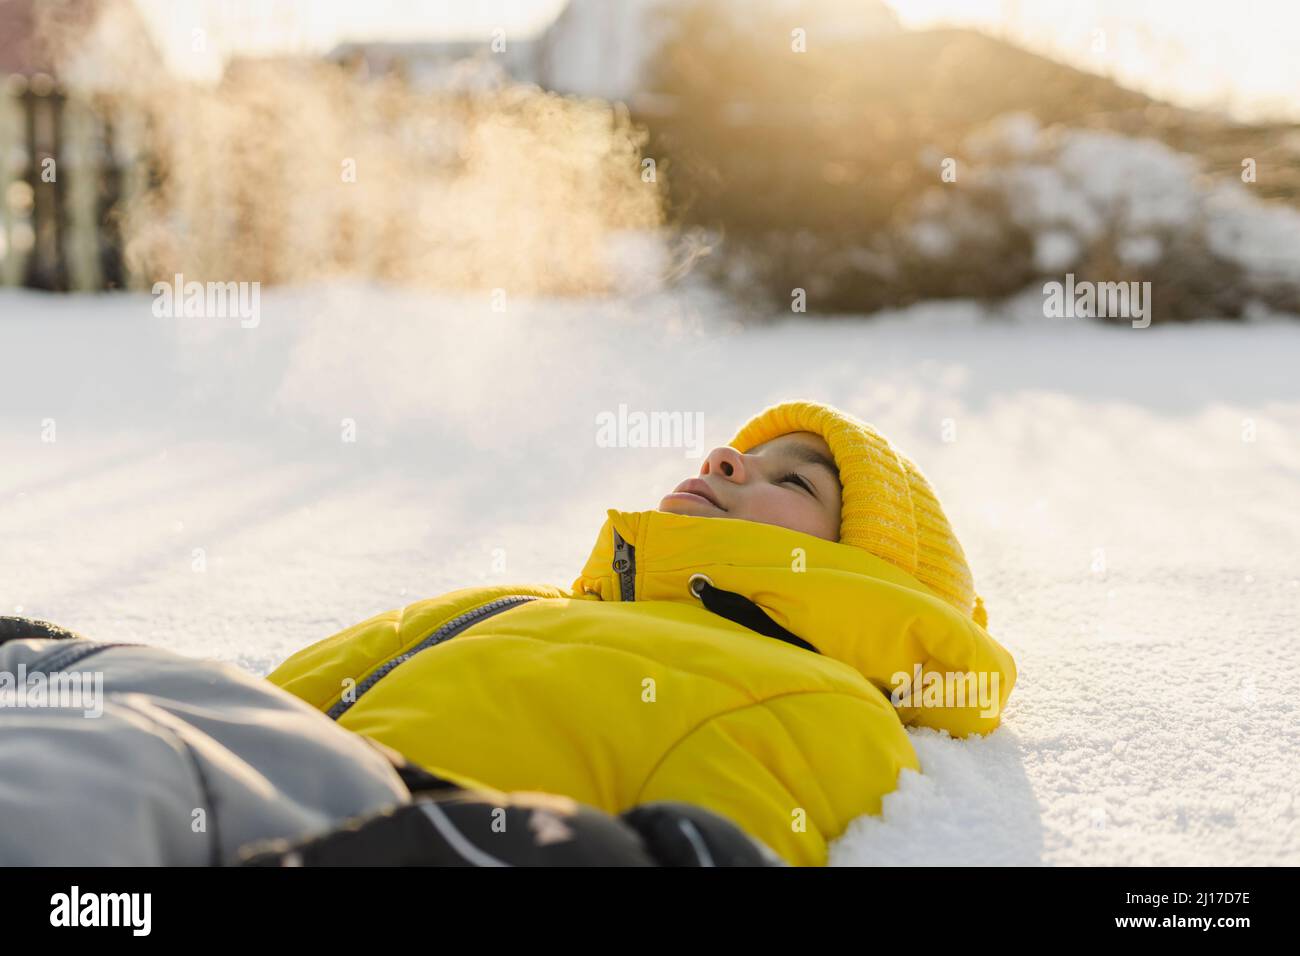 Junge mit Strickmütze, die im Winter auf Schnee liegt Stockfoto